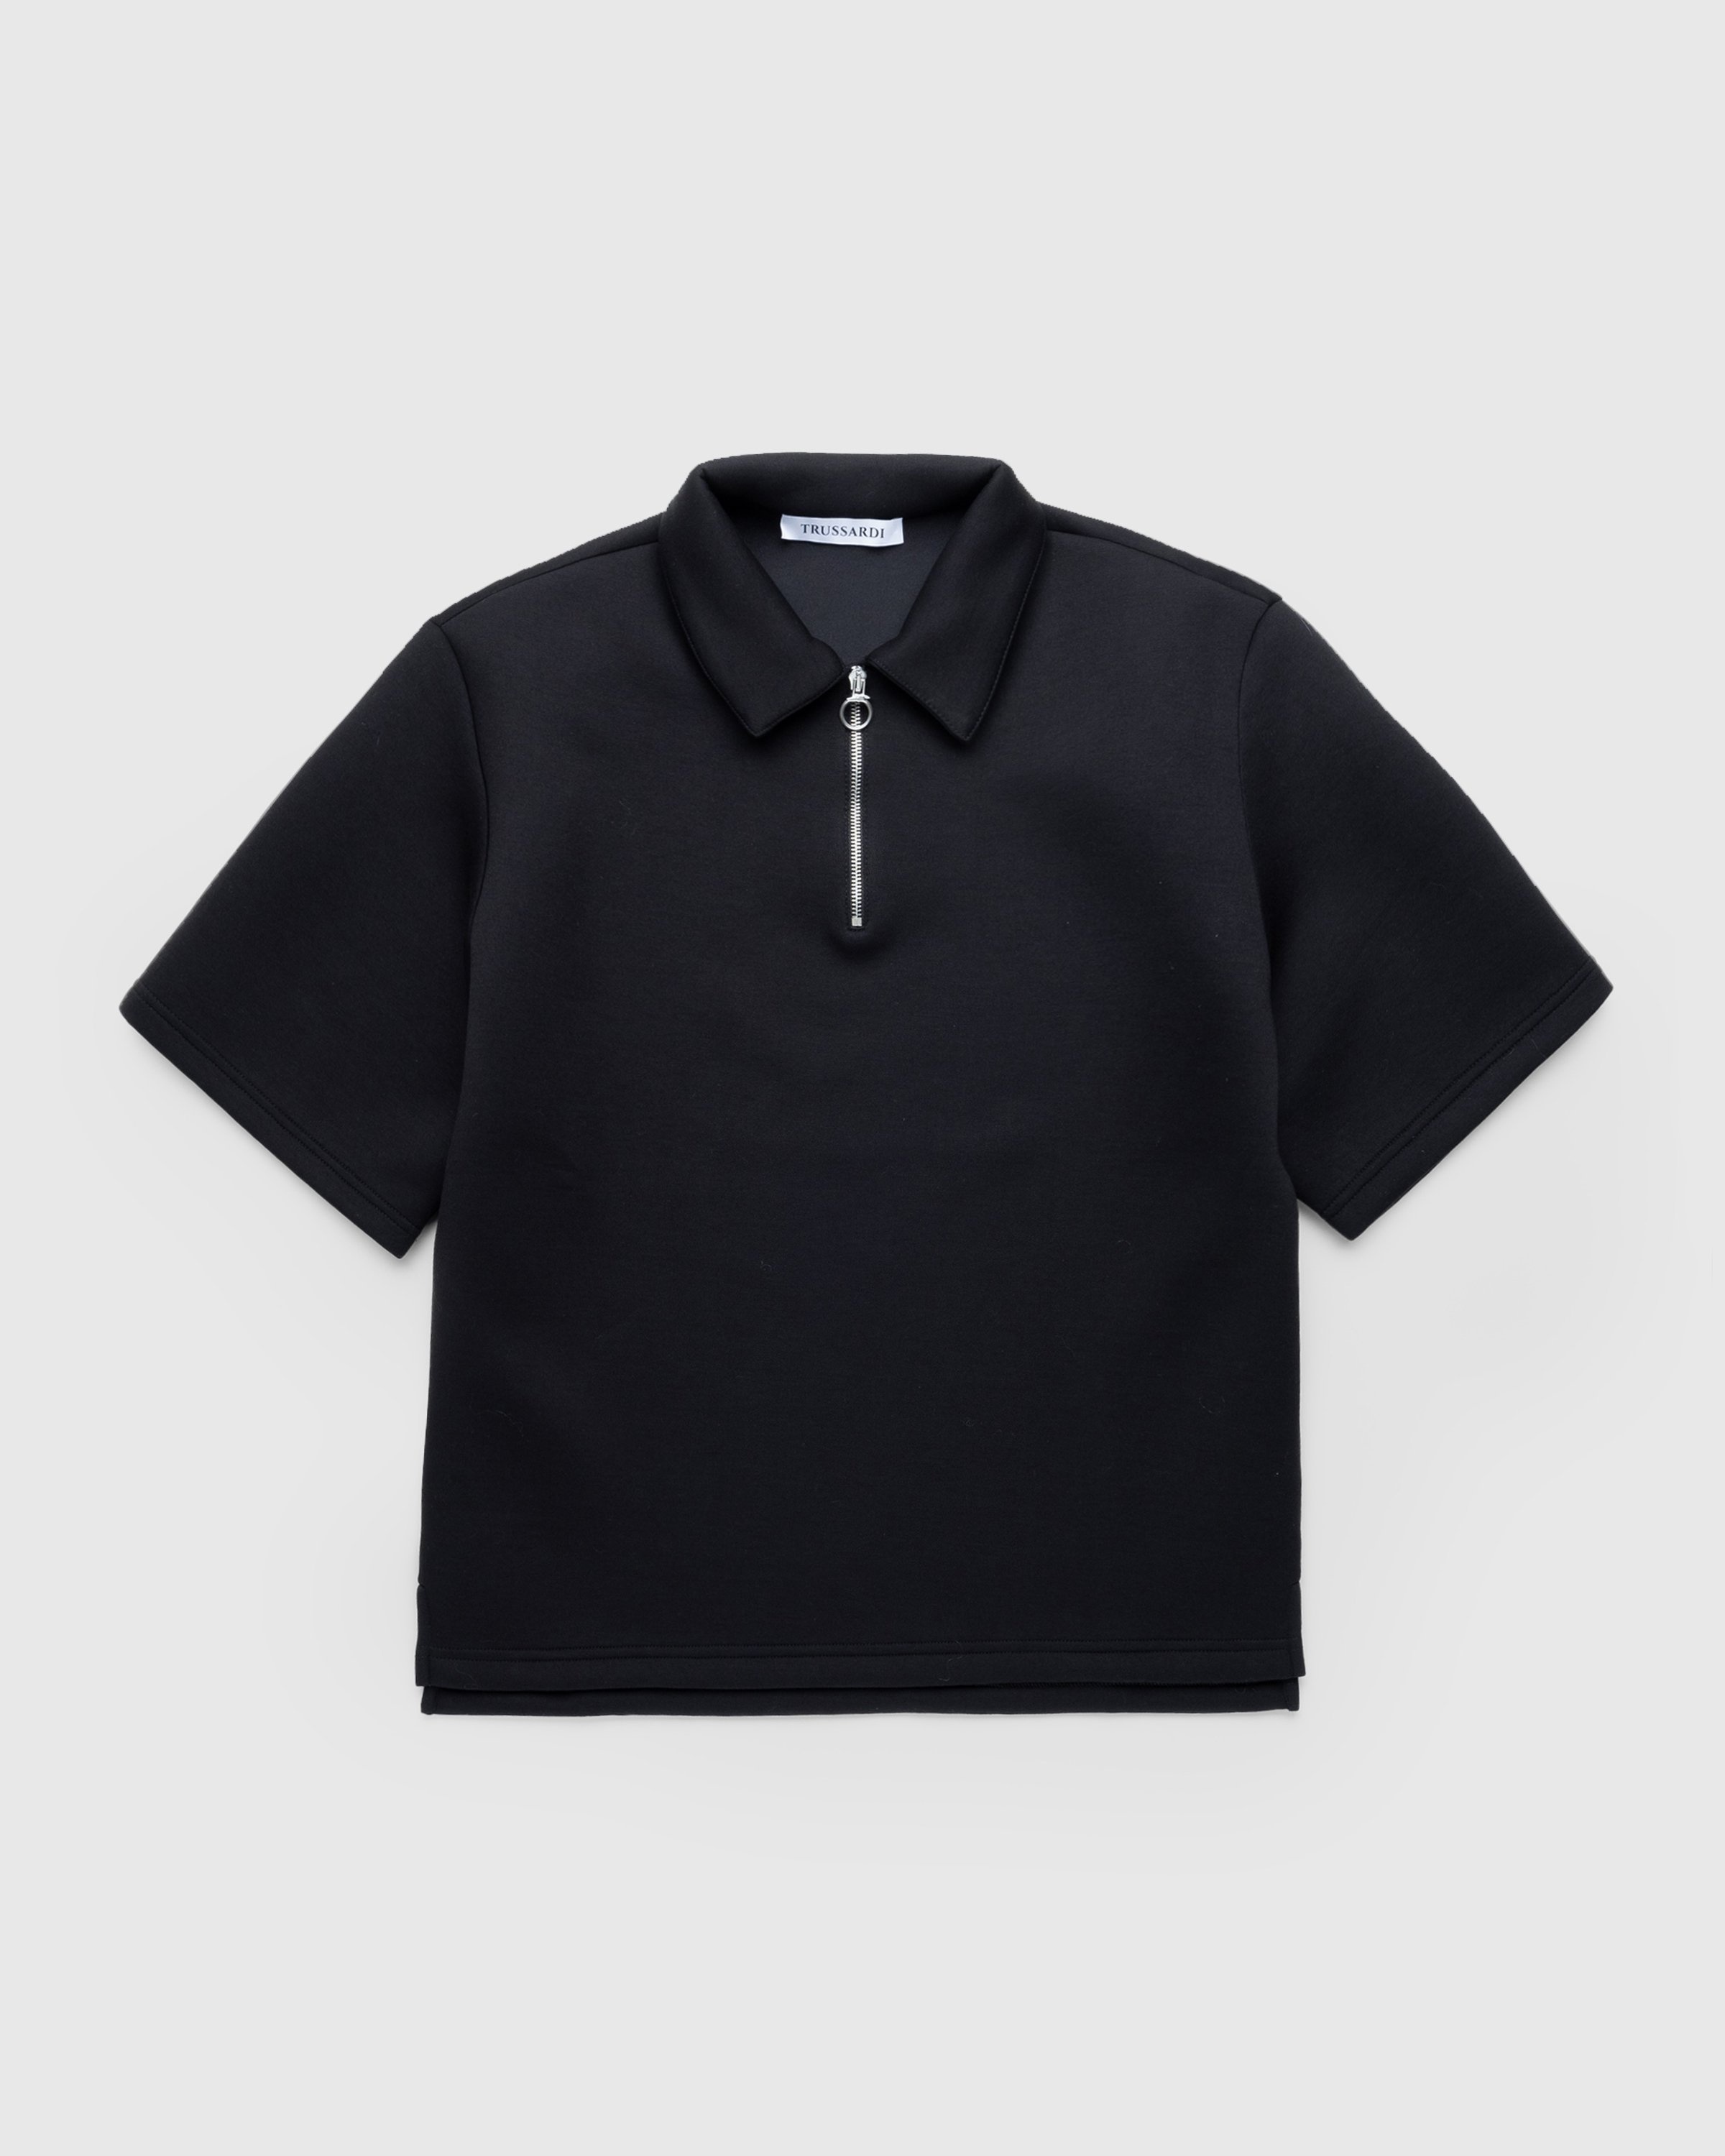 Trussardi – Quarter-Zip Scuba Polo Black  - Shirts - Black - Image 1